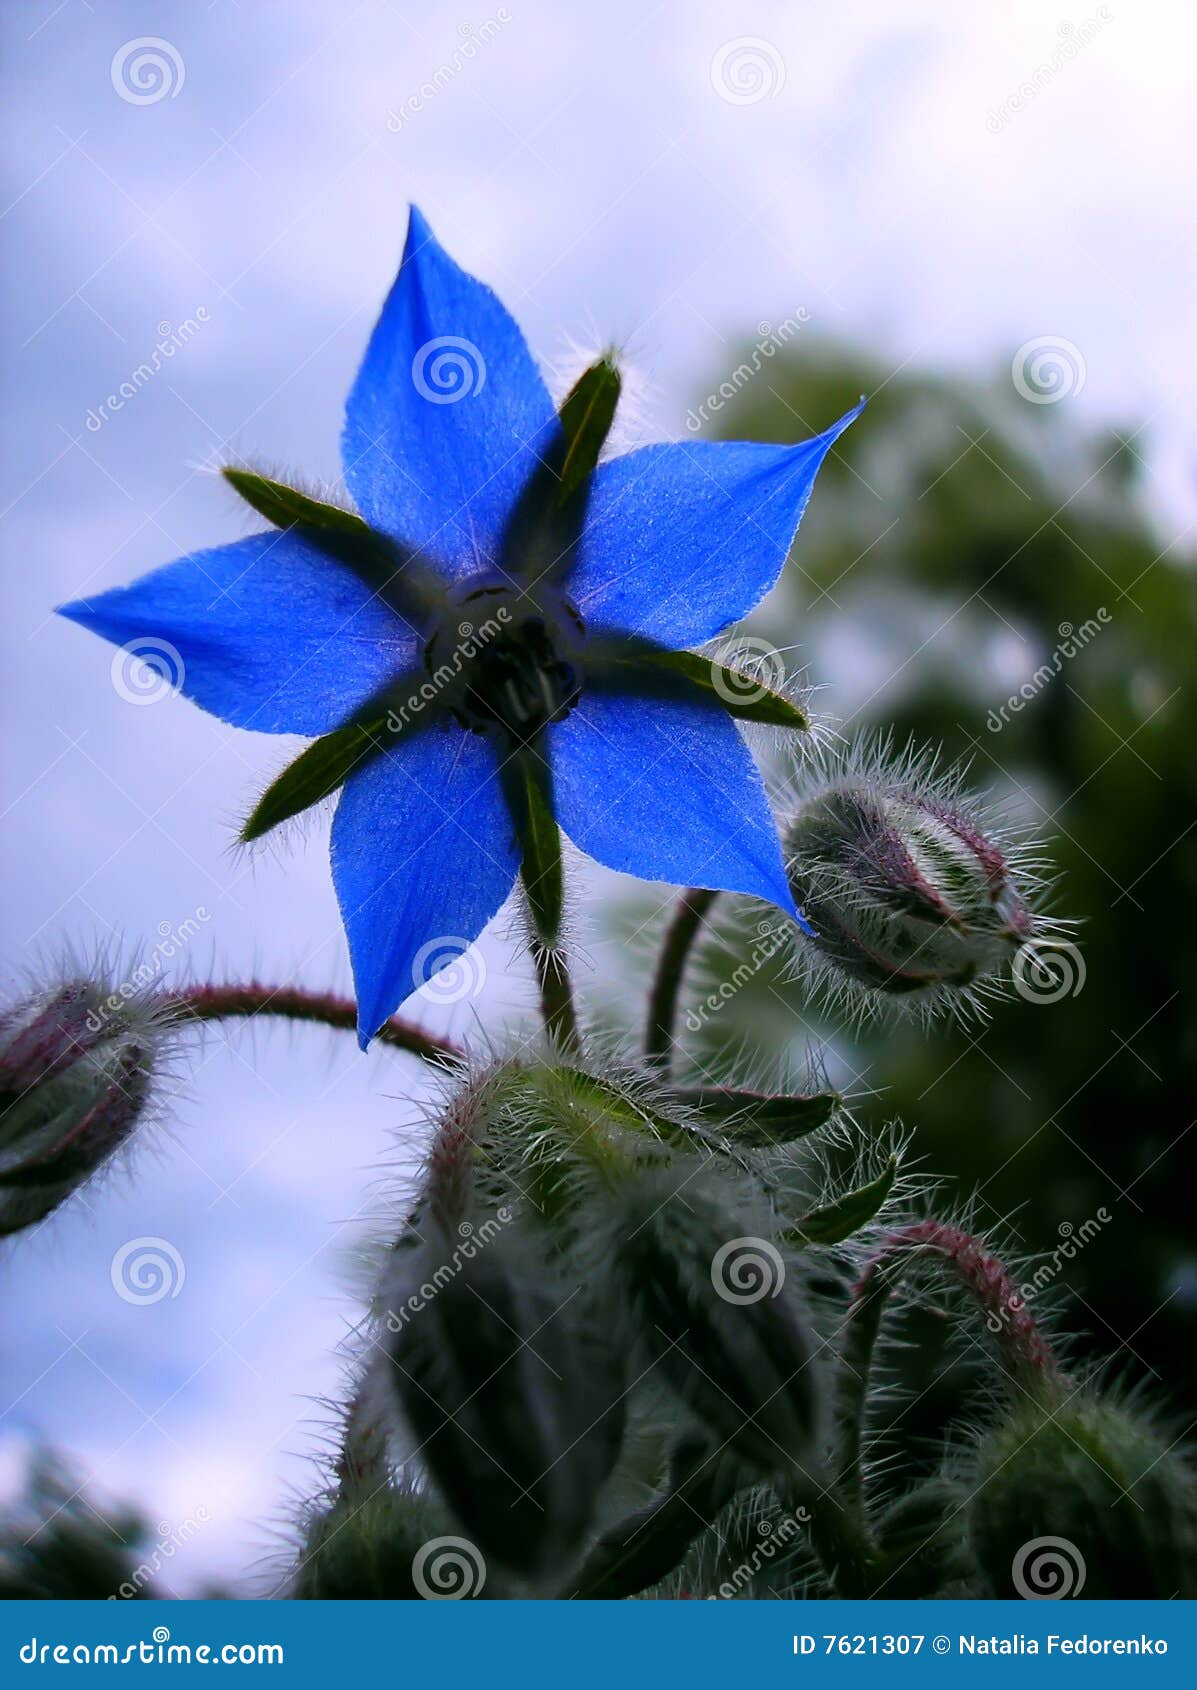 indigo flower